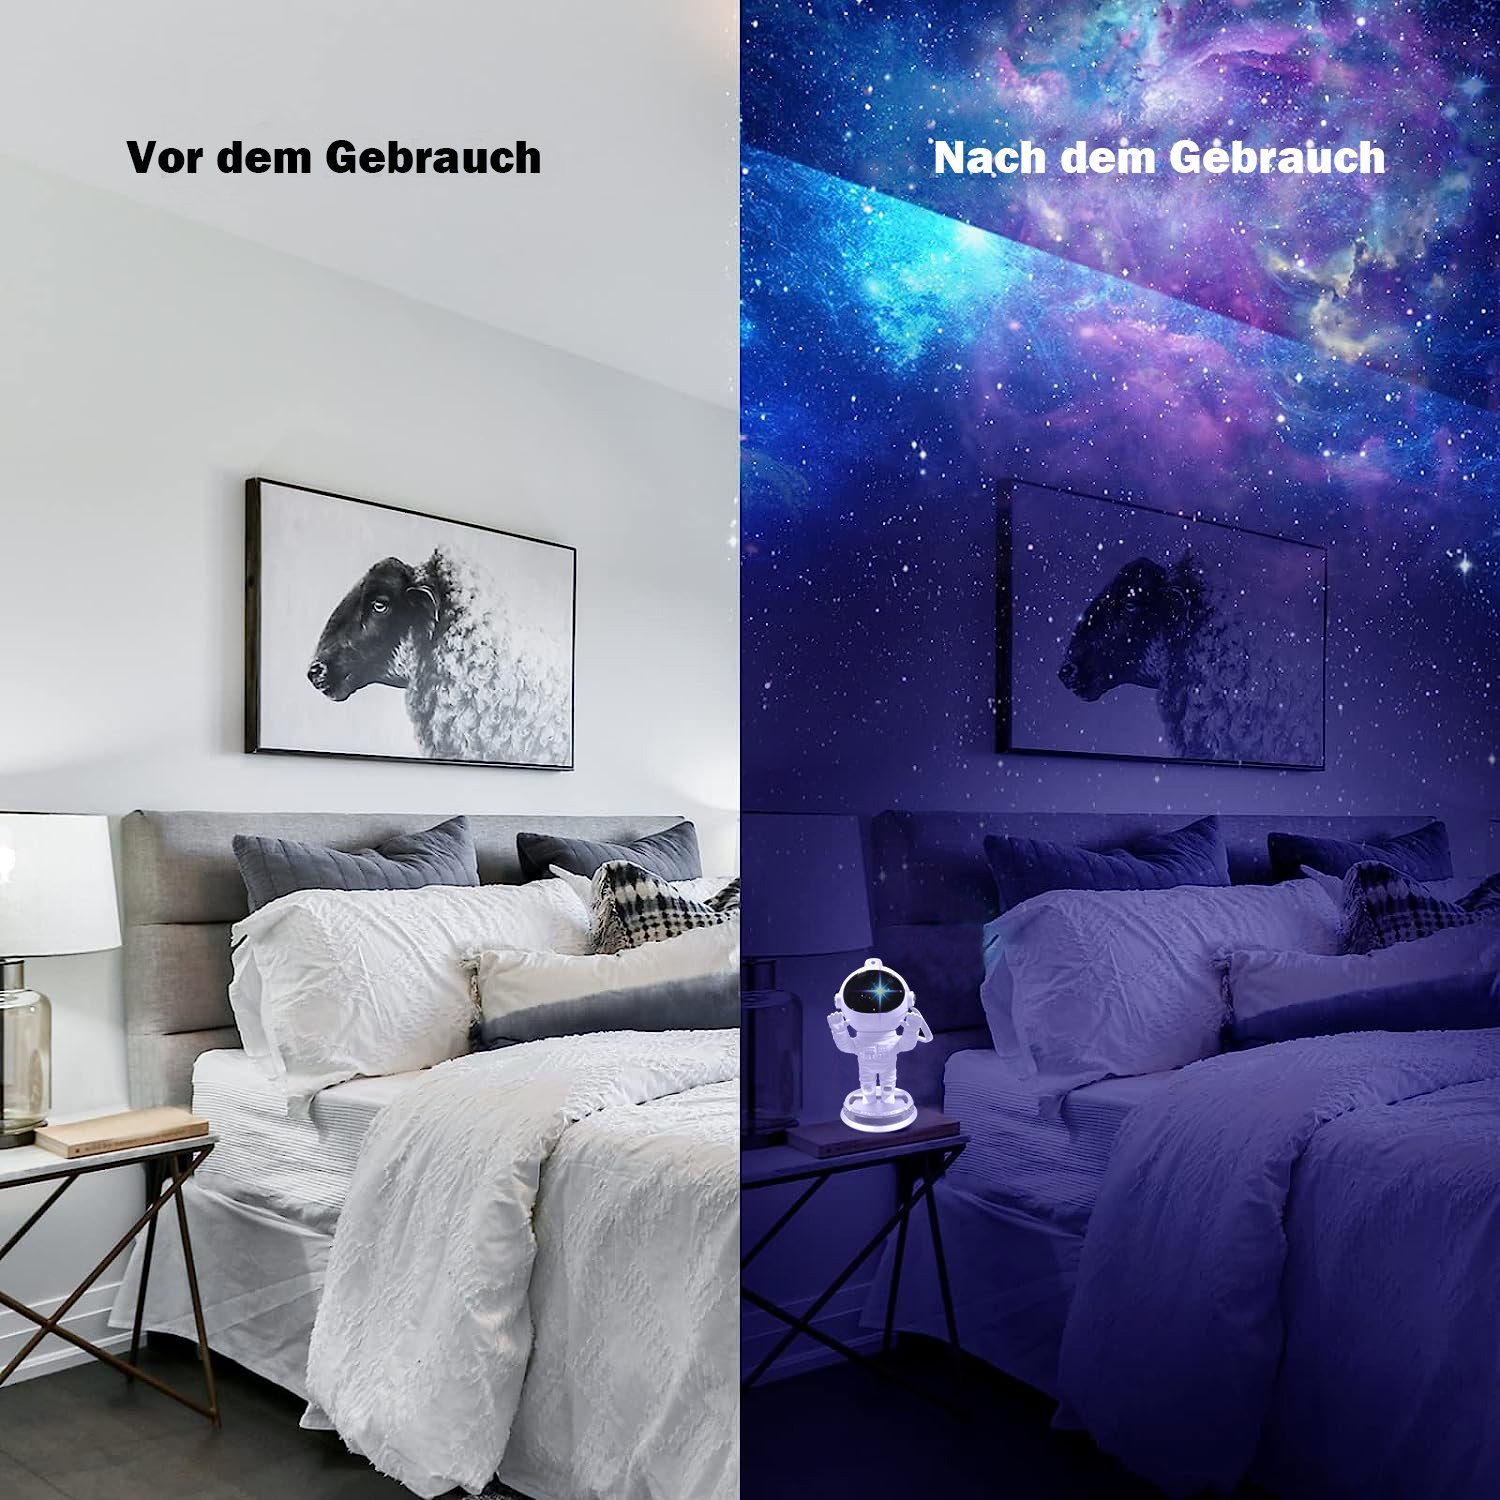 Starry Galaxy & Lampe Astronauten Projektor, Nachtlicht Astronauten Mit Nachtlicht-1 Sternenhimmel Projector, Fernbedienung MUPOO LED Light Timer LED